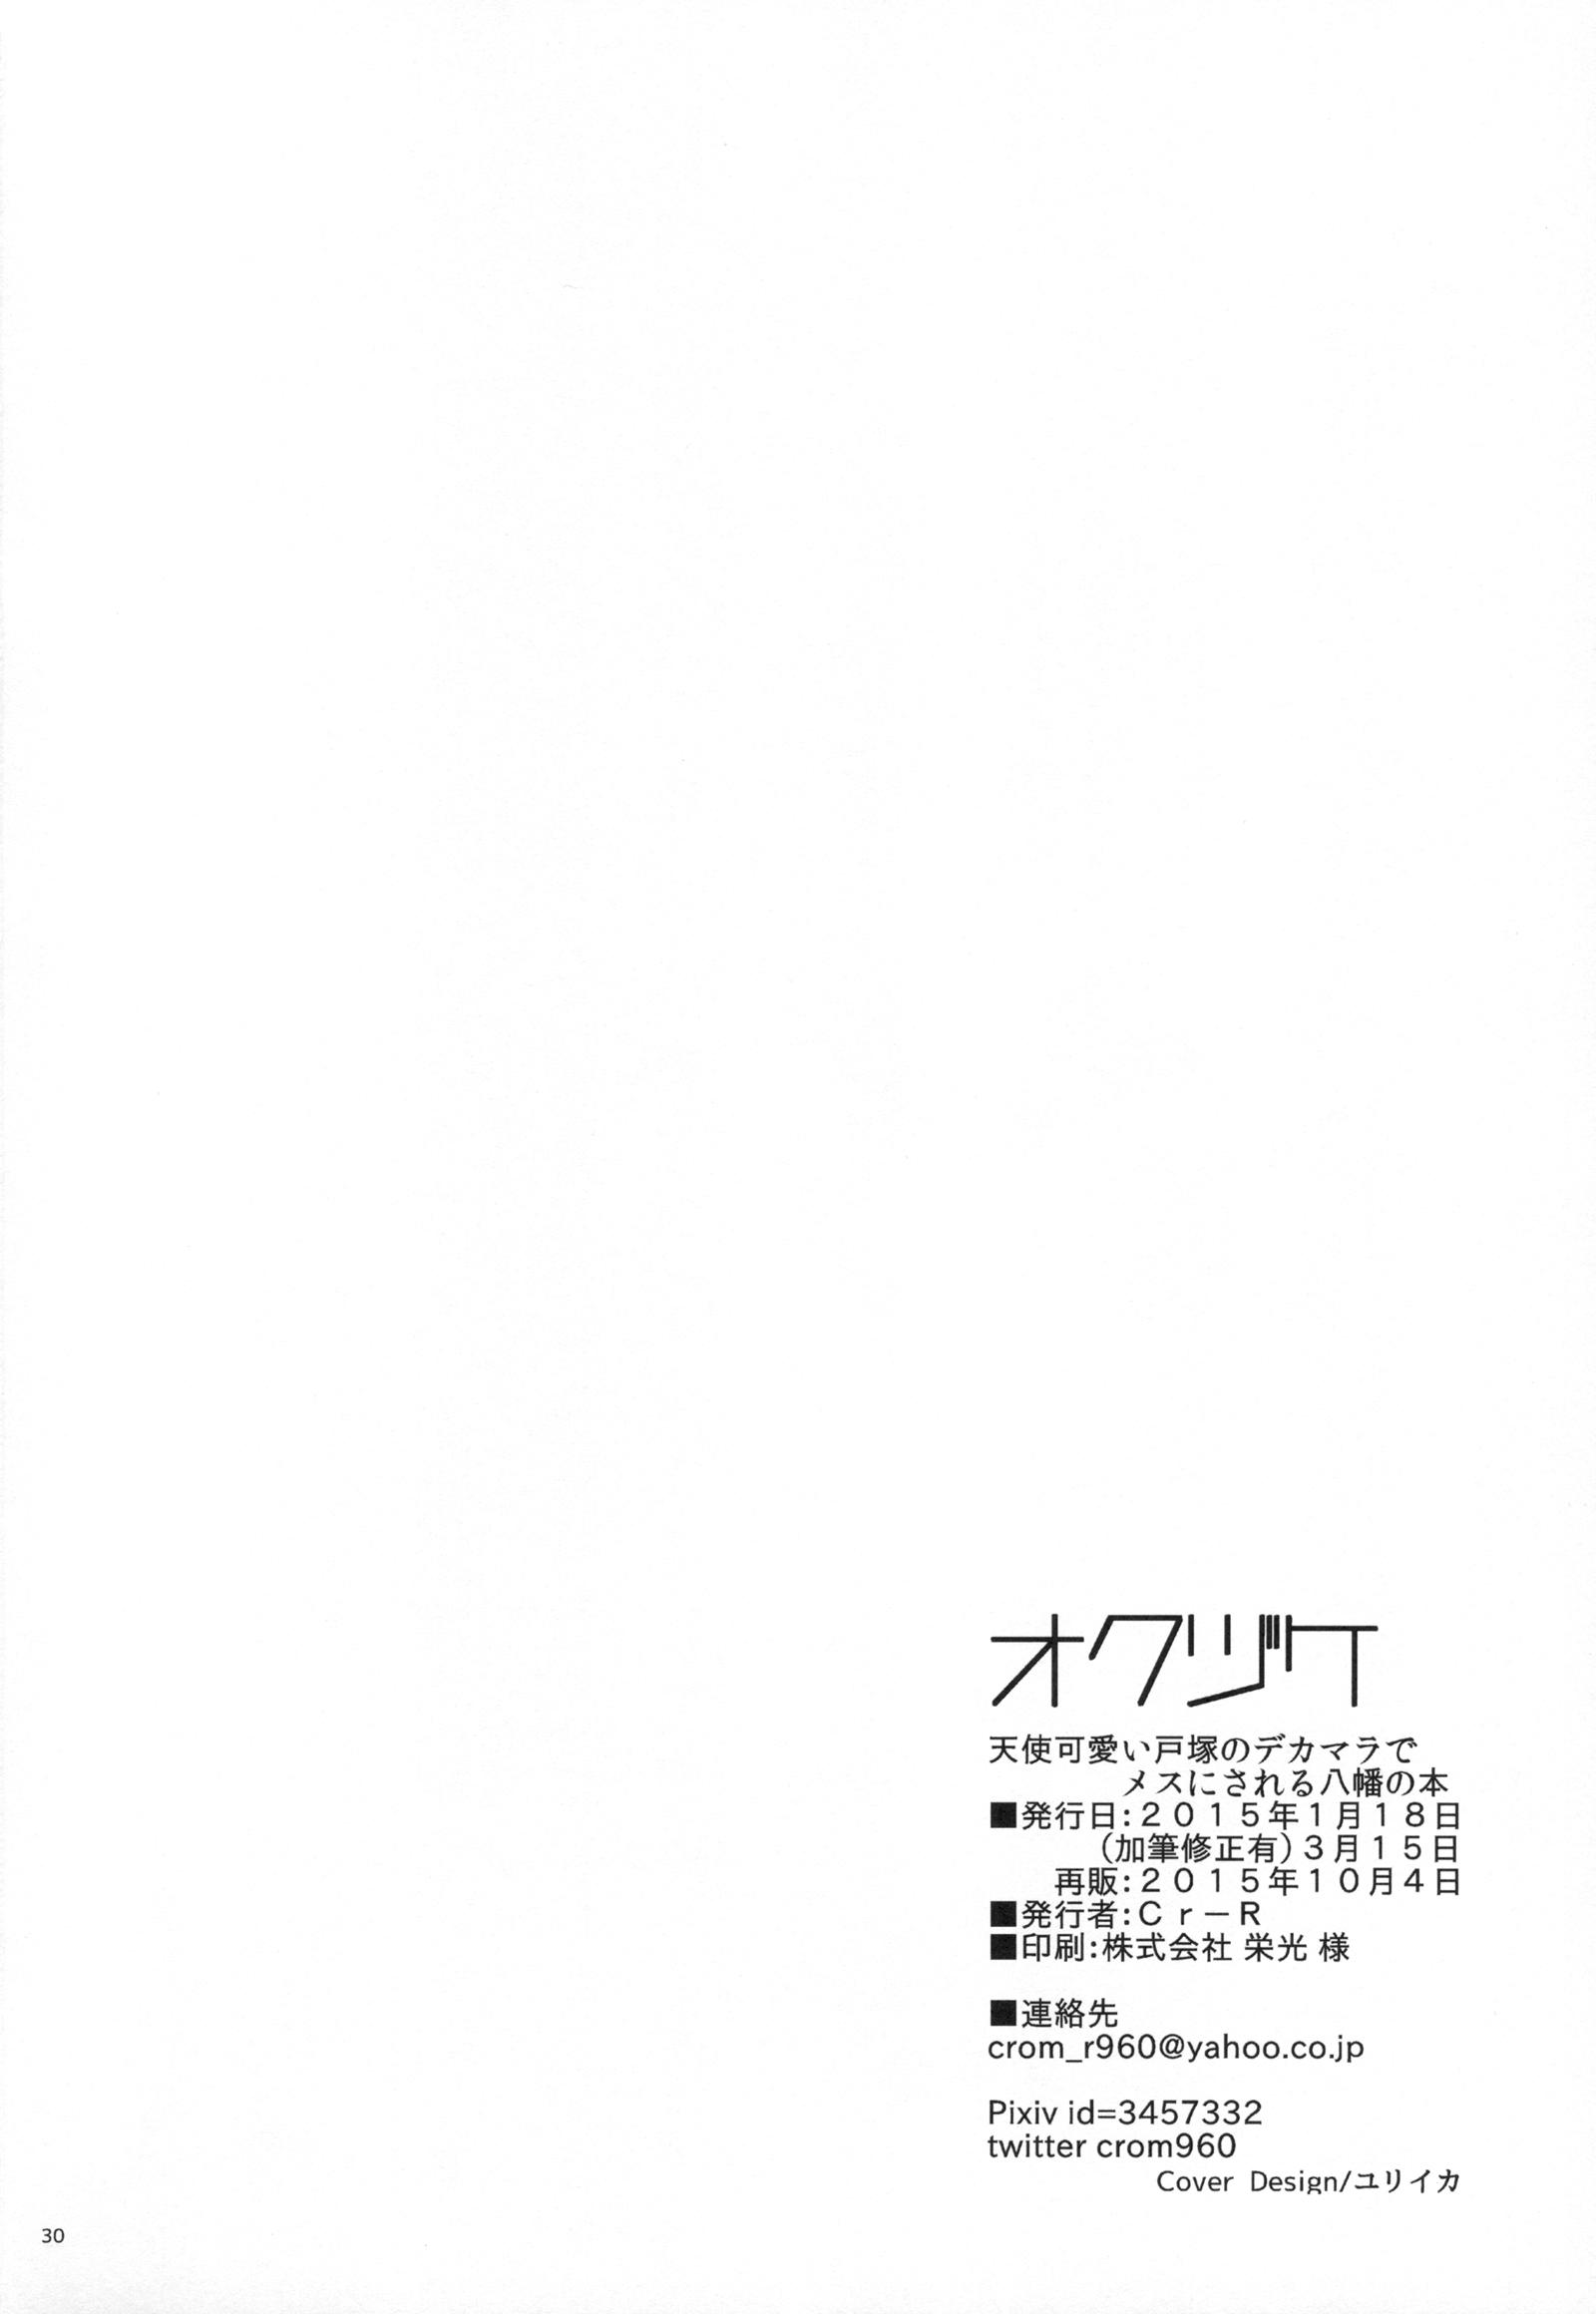 Pau Tenshi Kawaii Totsuka no Dekamara de Mesu ni Sareru Hachiman no Hon. - Yahari ore no seishun love come wa machigatteiru Amador - Page 29